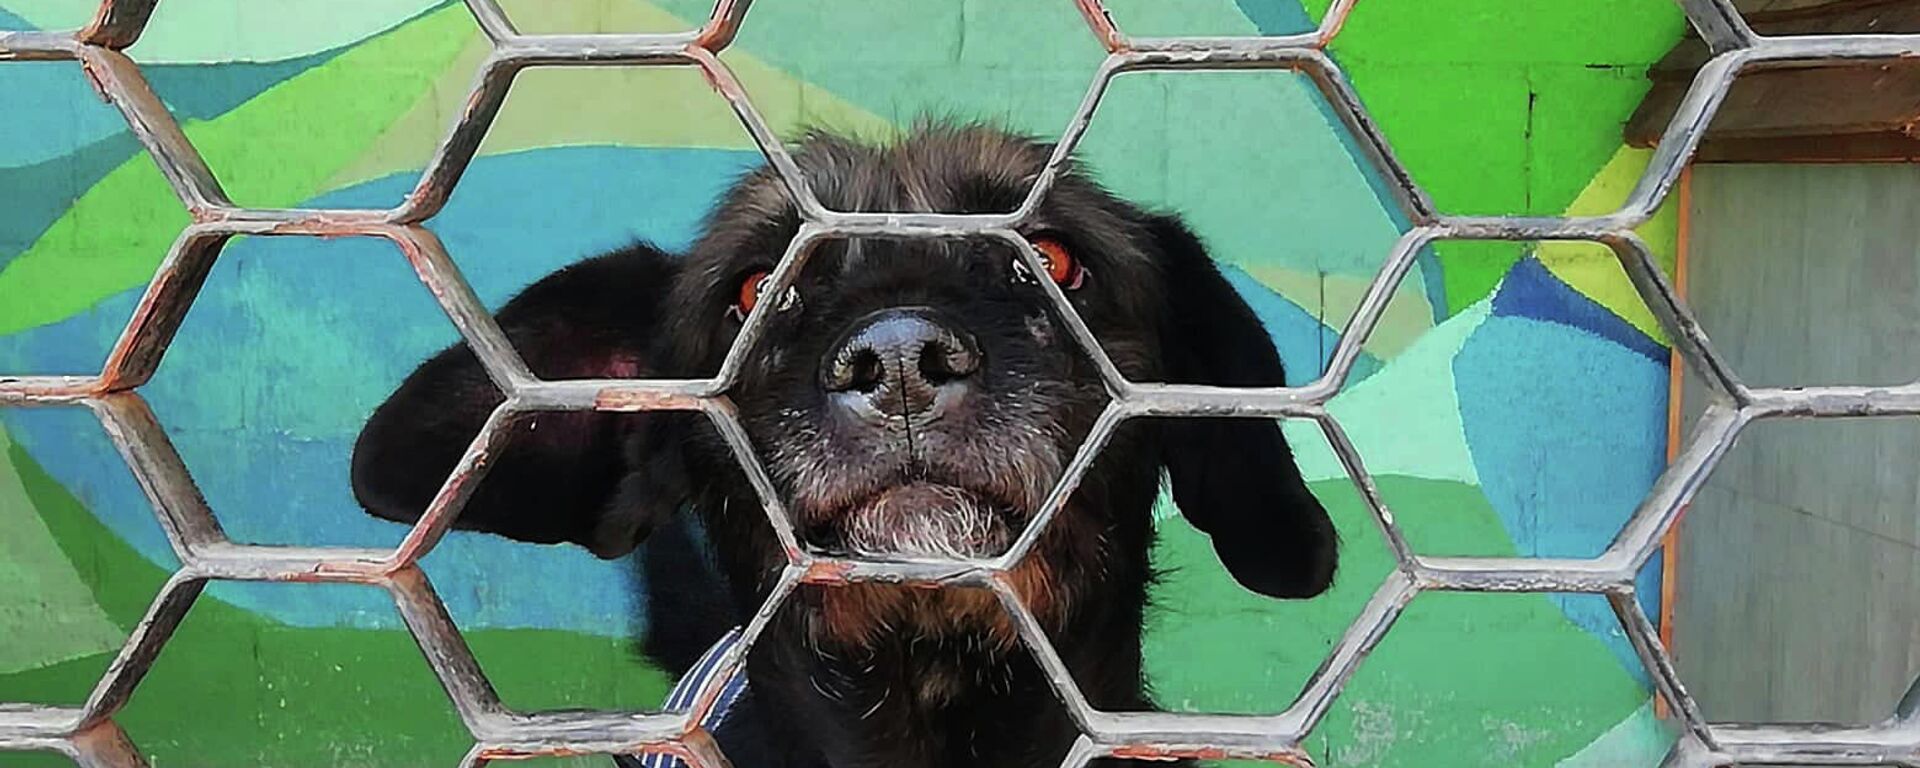 Perro en adopción en el Centro de Transferencia Canina del Metro de la Ciudad de México - Sputnik Mundo, 1920, 29.12.2021